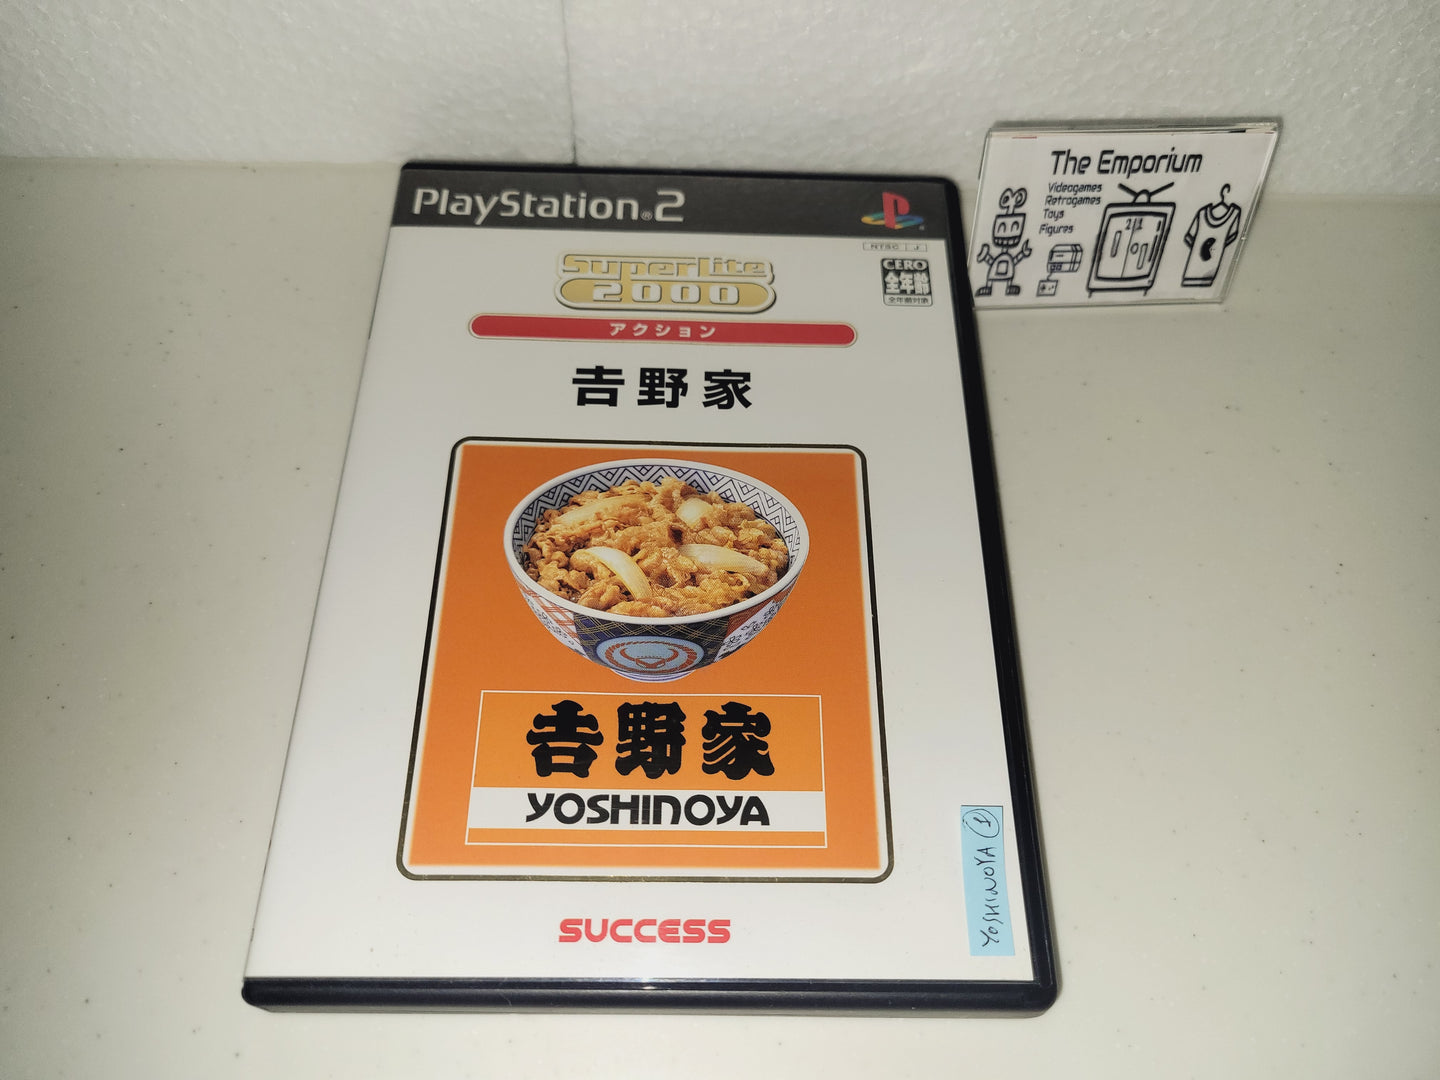 SuperLite 2000: Yoshinoya -  Sony playstation 2